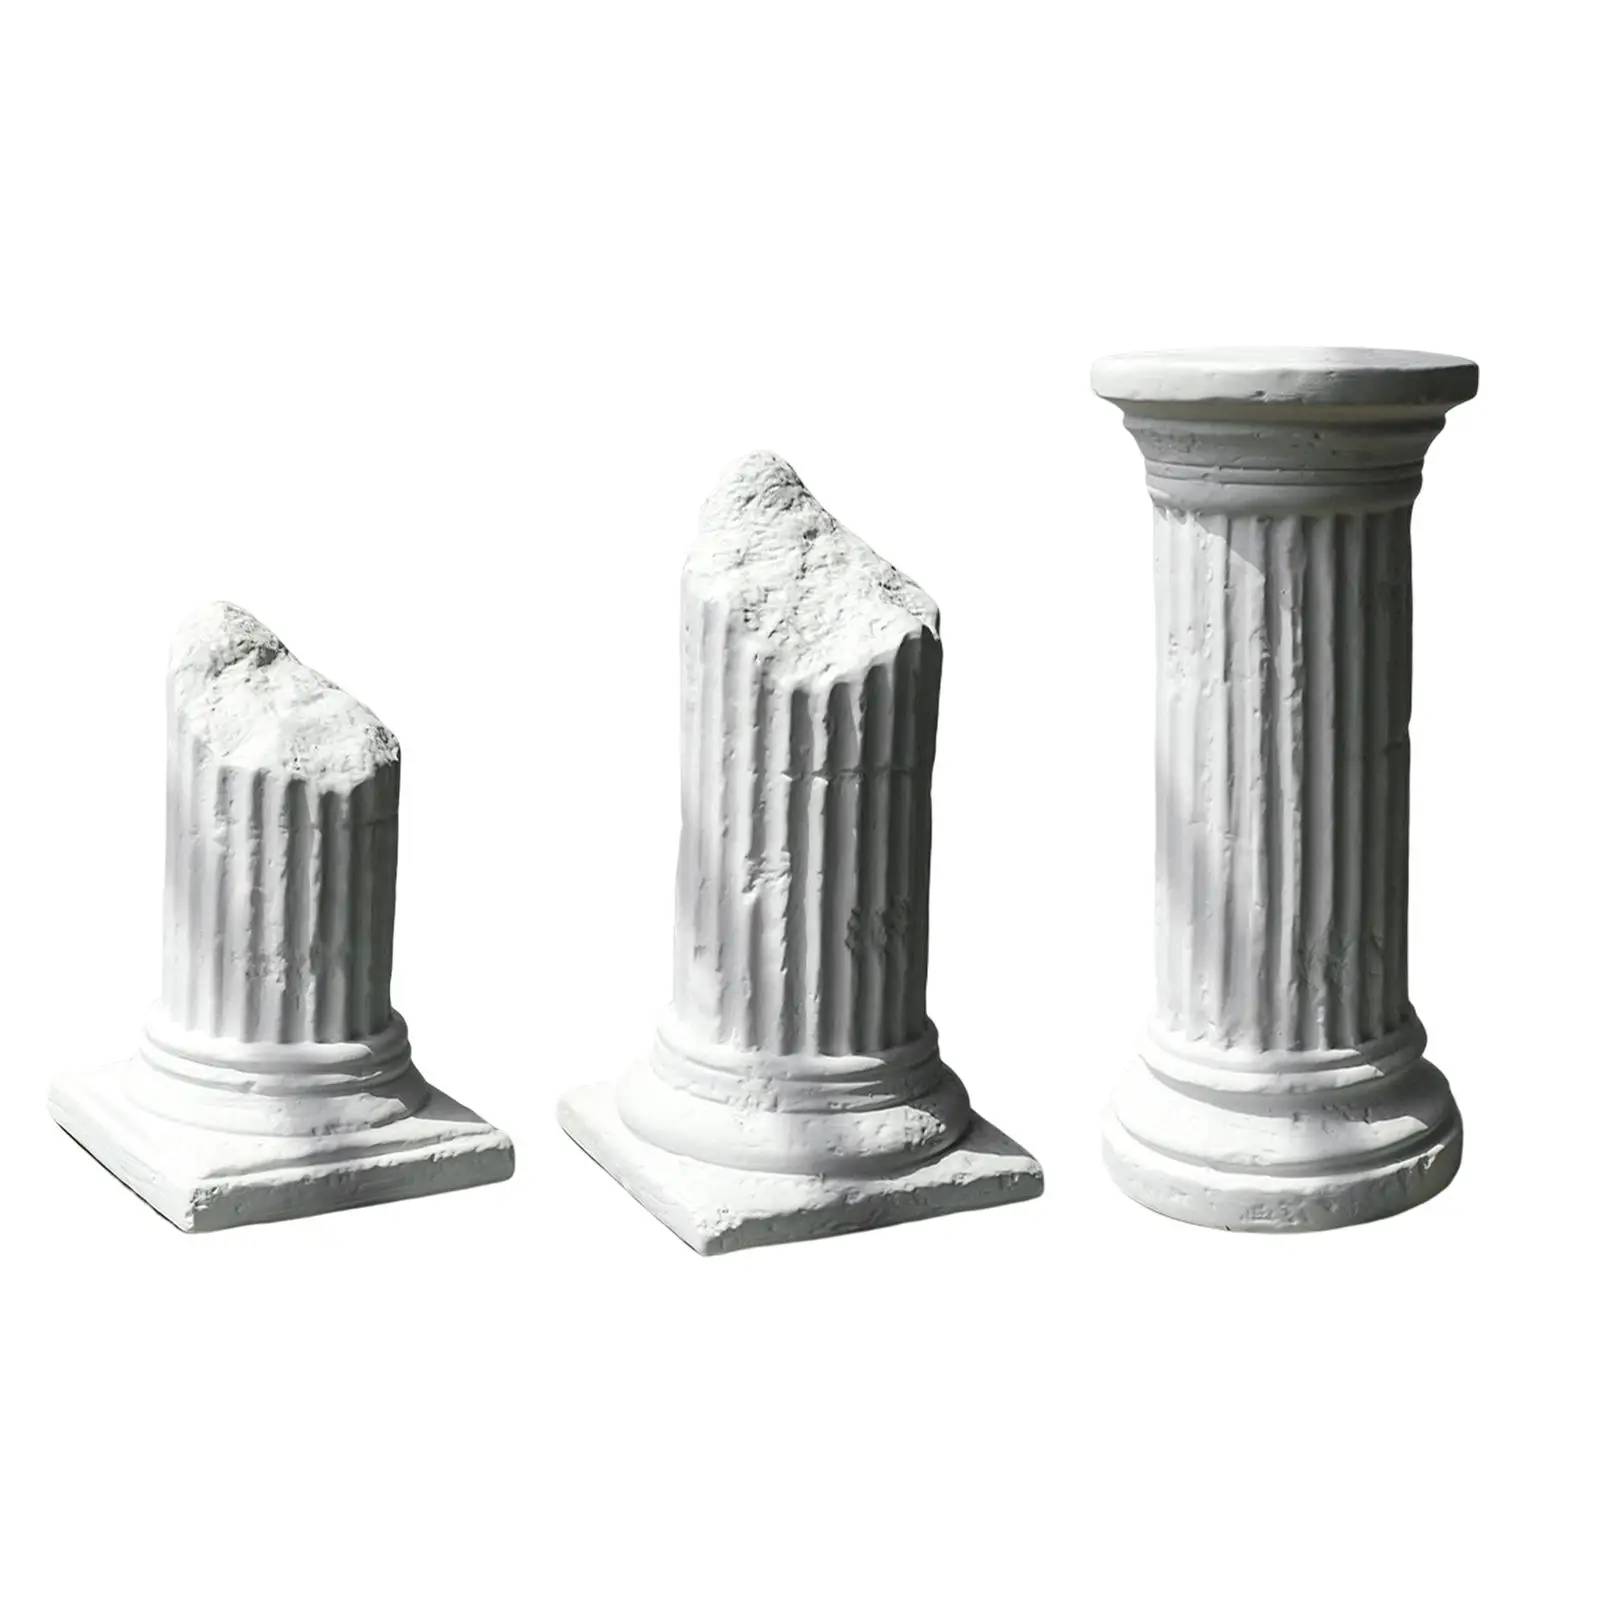 Görög oszlop római oszlop fotó kellék kreatív dekoratív ajándék dísz északi - 3